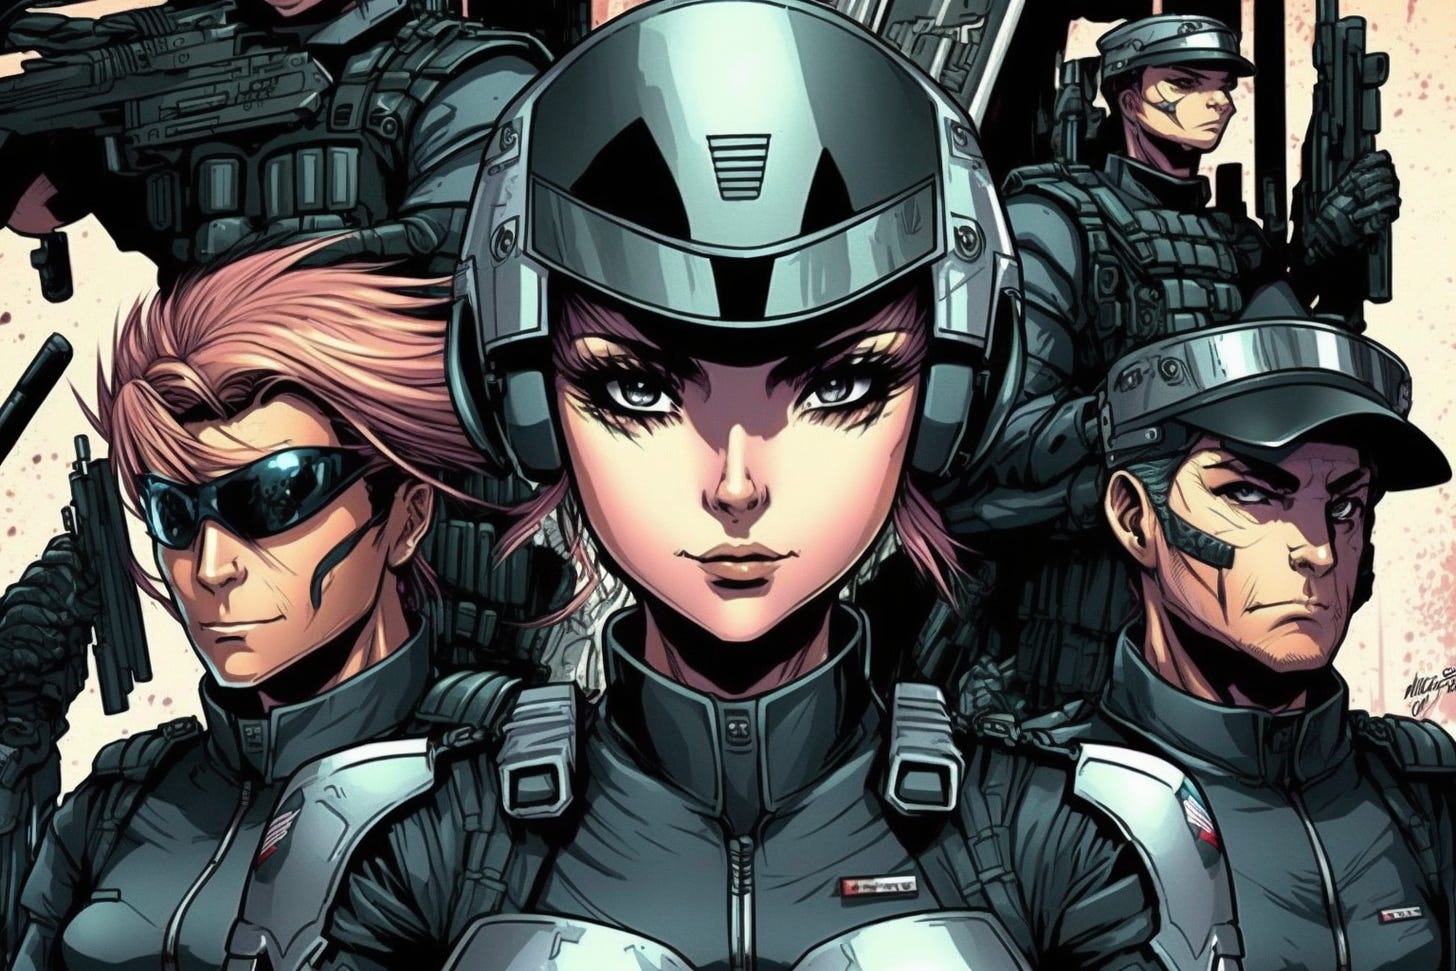 futuristic comic book paramilitary squad. Manga style.